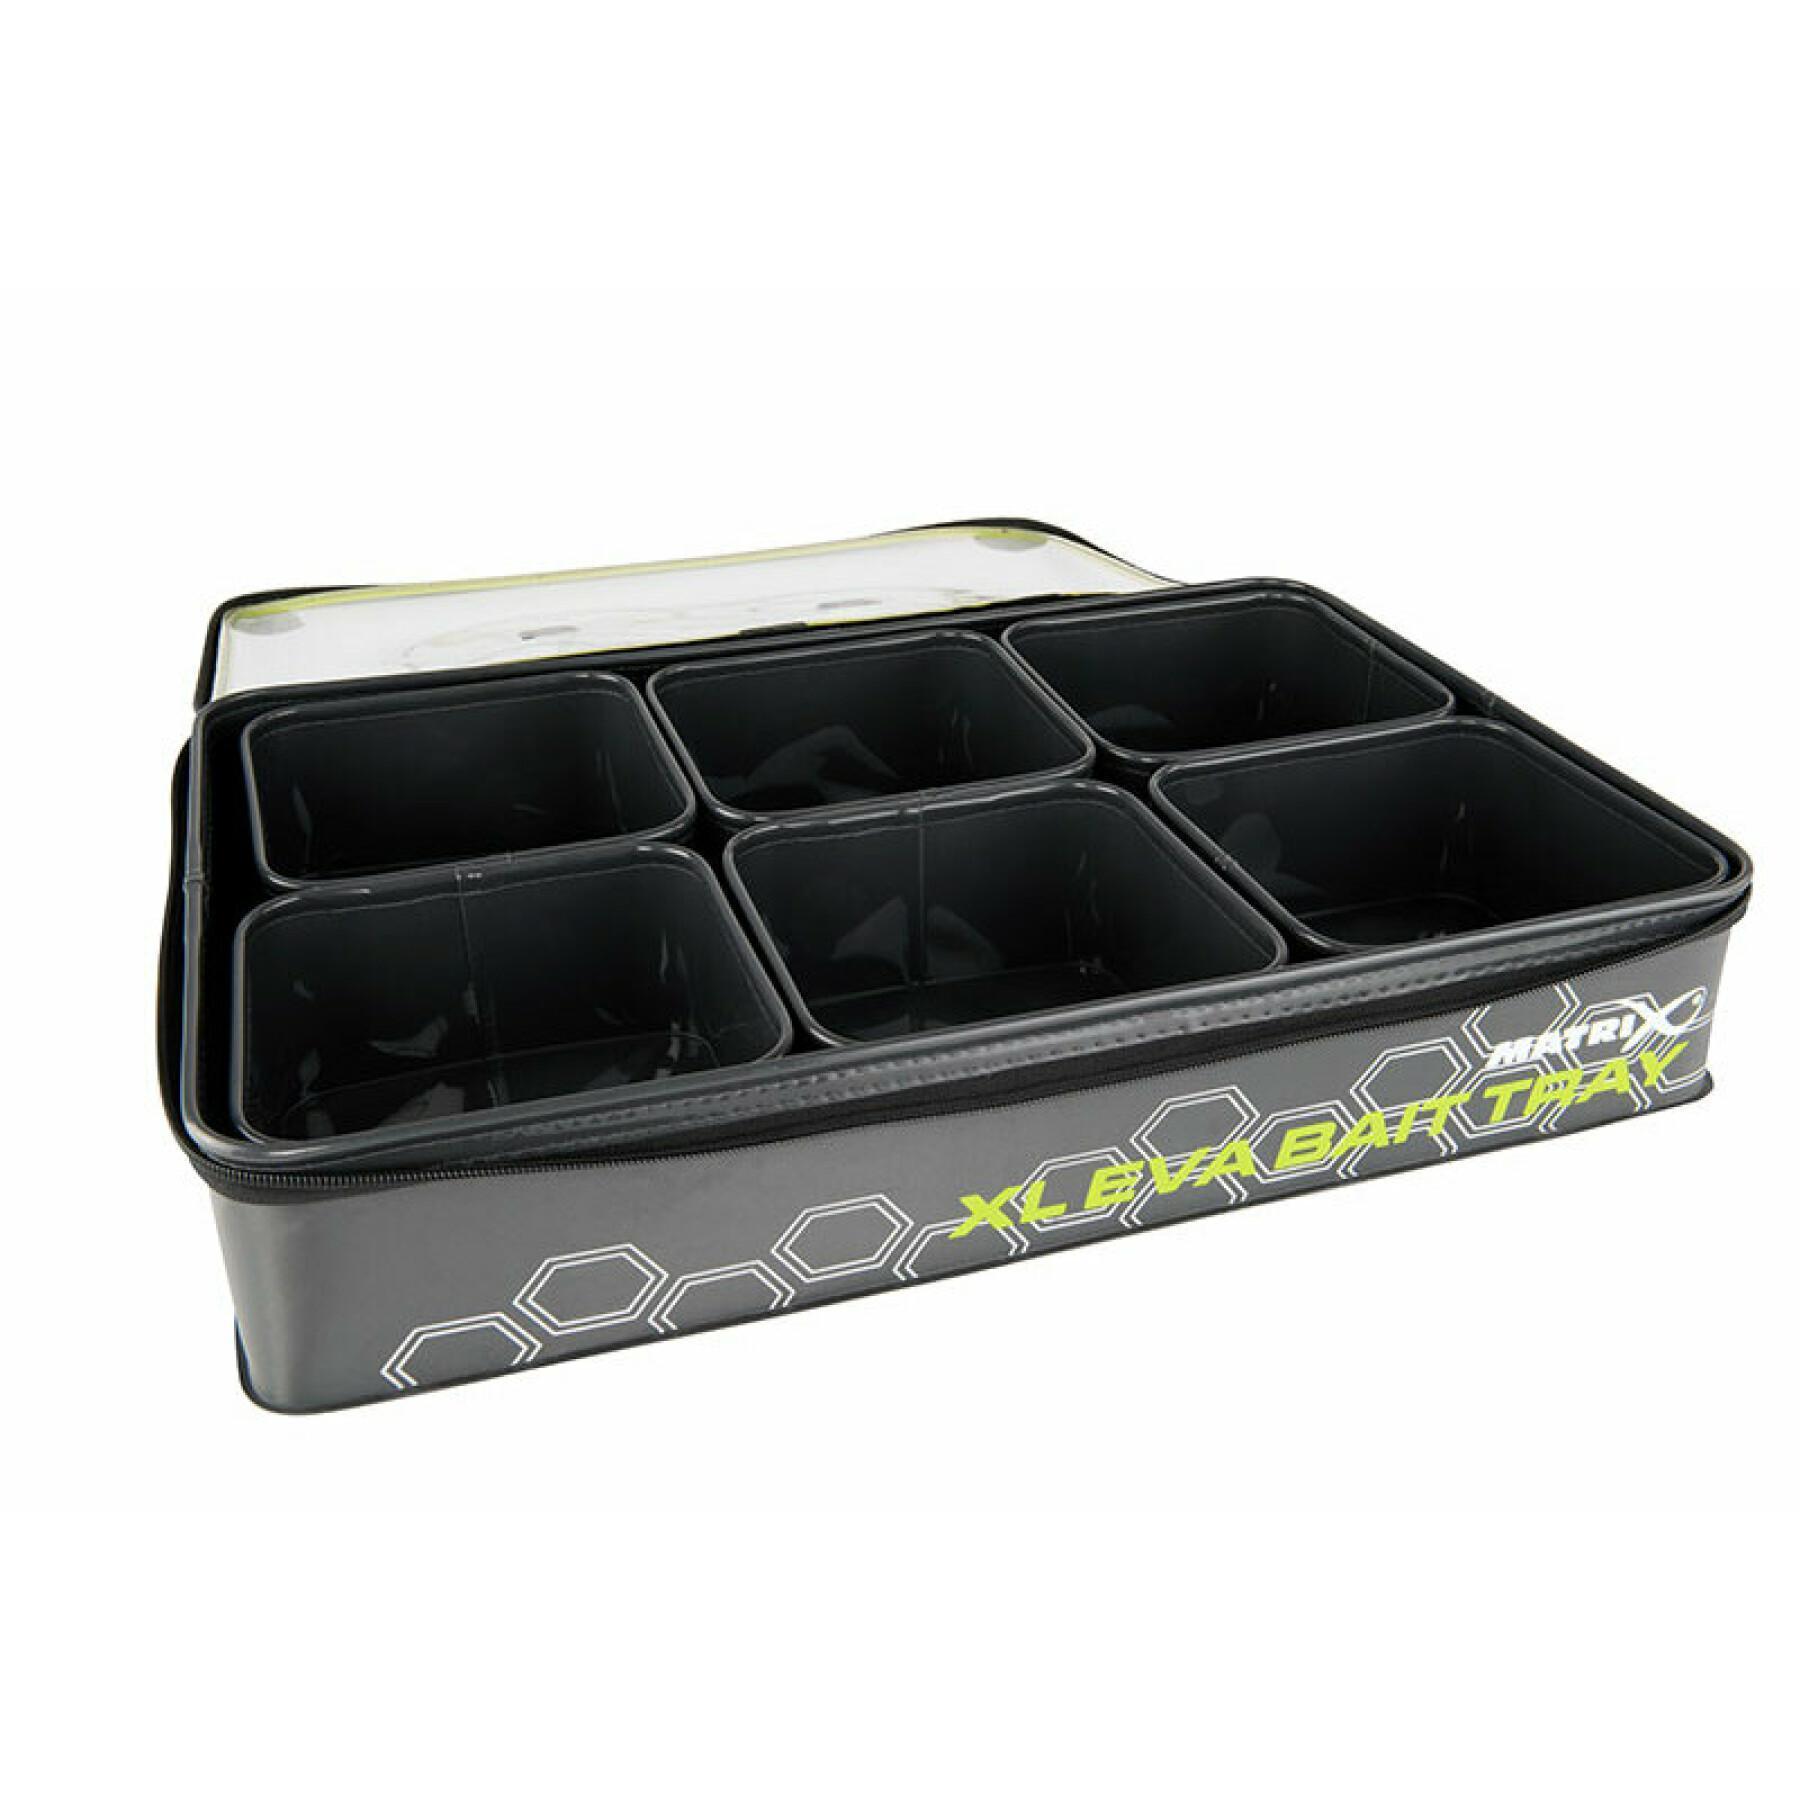 Bait tray with 6 pots Matrix eva